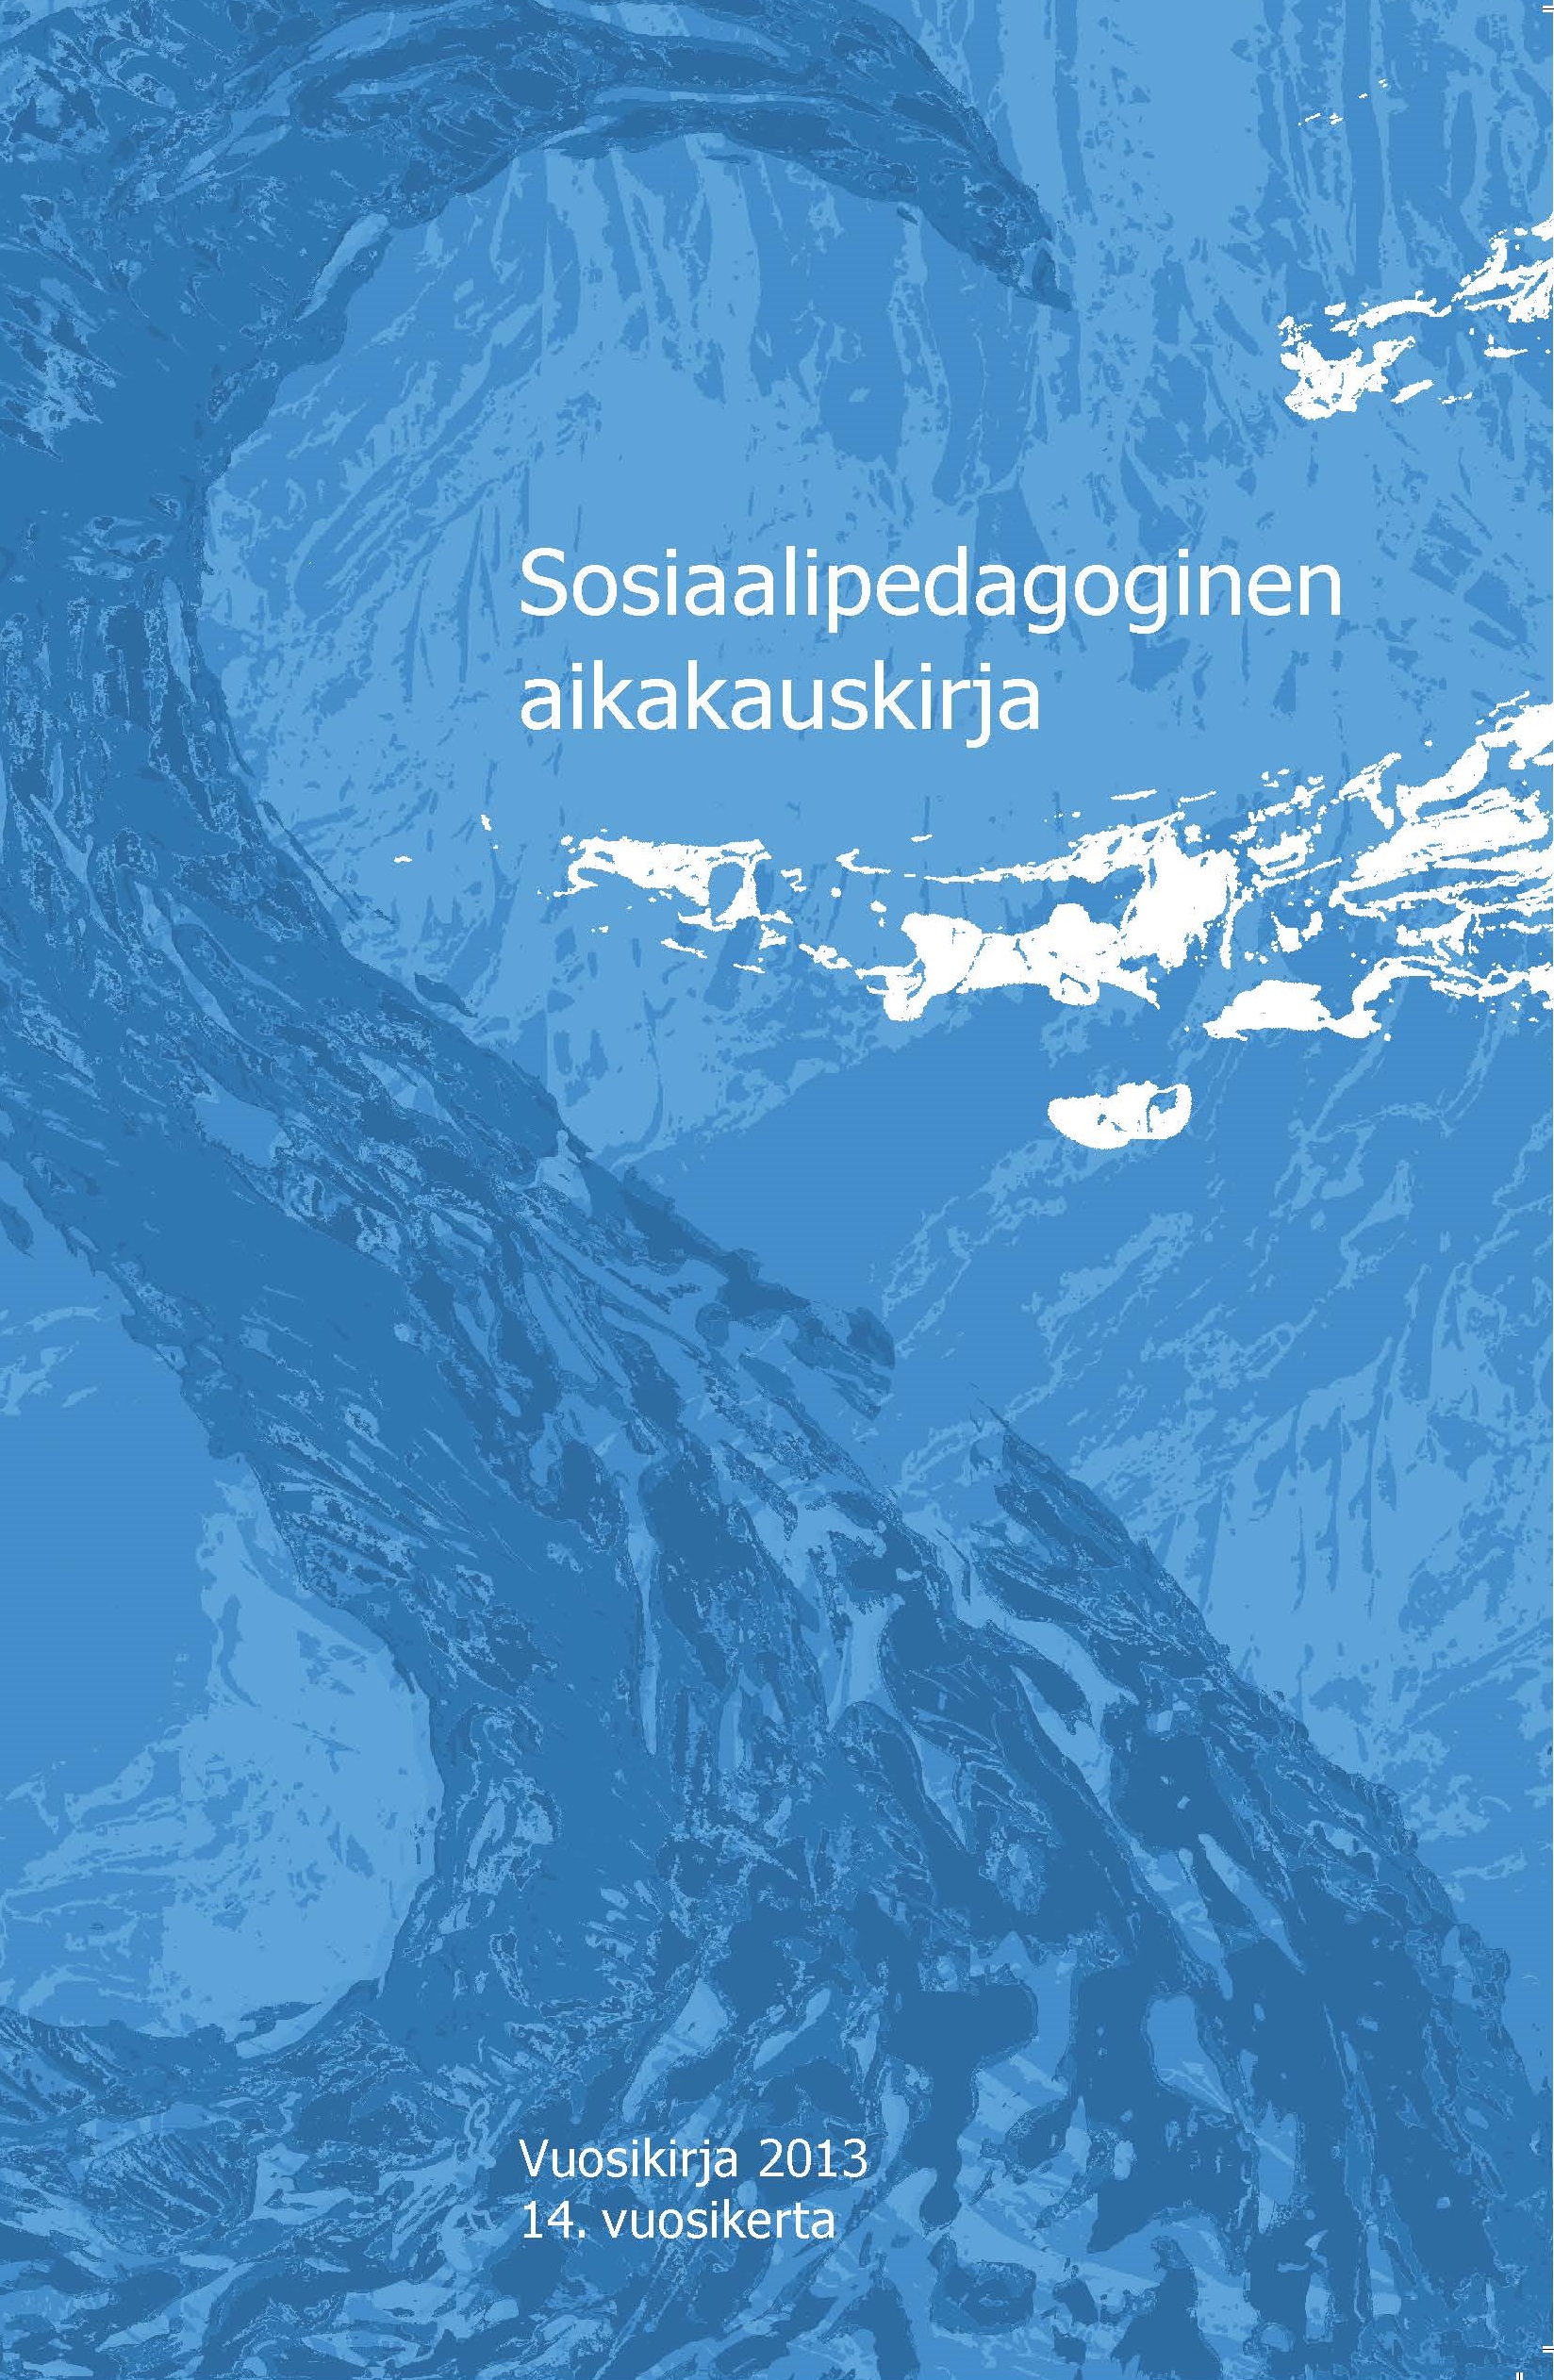 					Näytä Vol 14 (2013): Sosiaalipedagoginen aikakauskirja, vuosikirja 2013
				